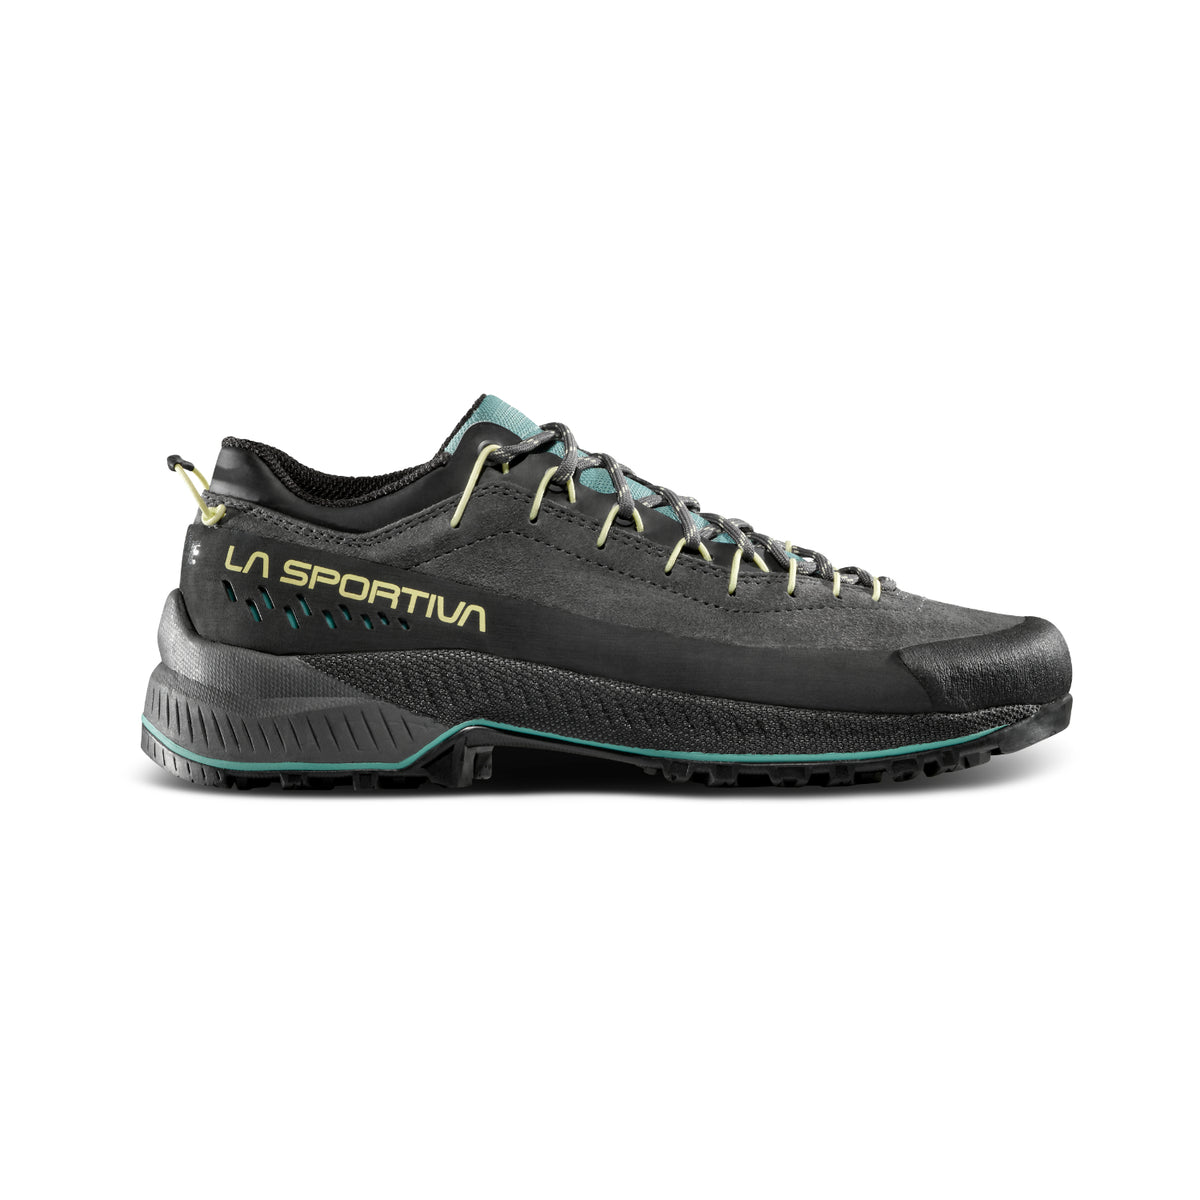 La Sportiva TX4 Evo - Womens apporach shoes in carbon zest colour